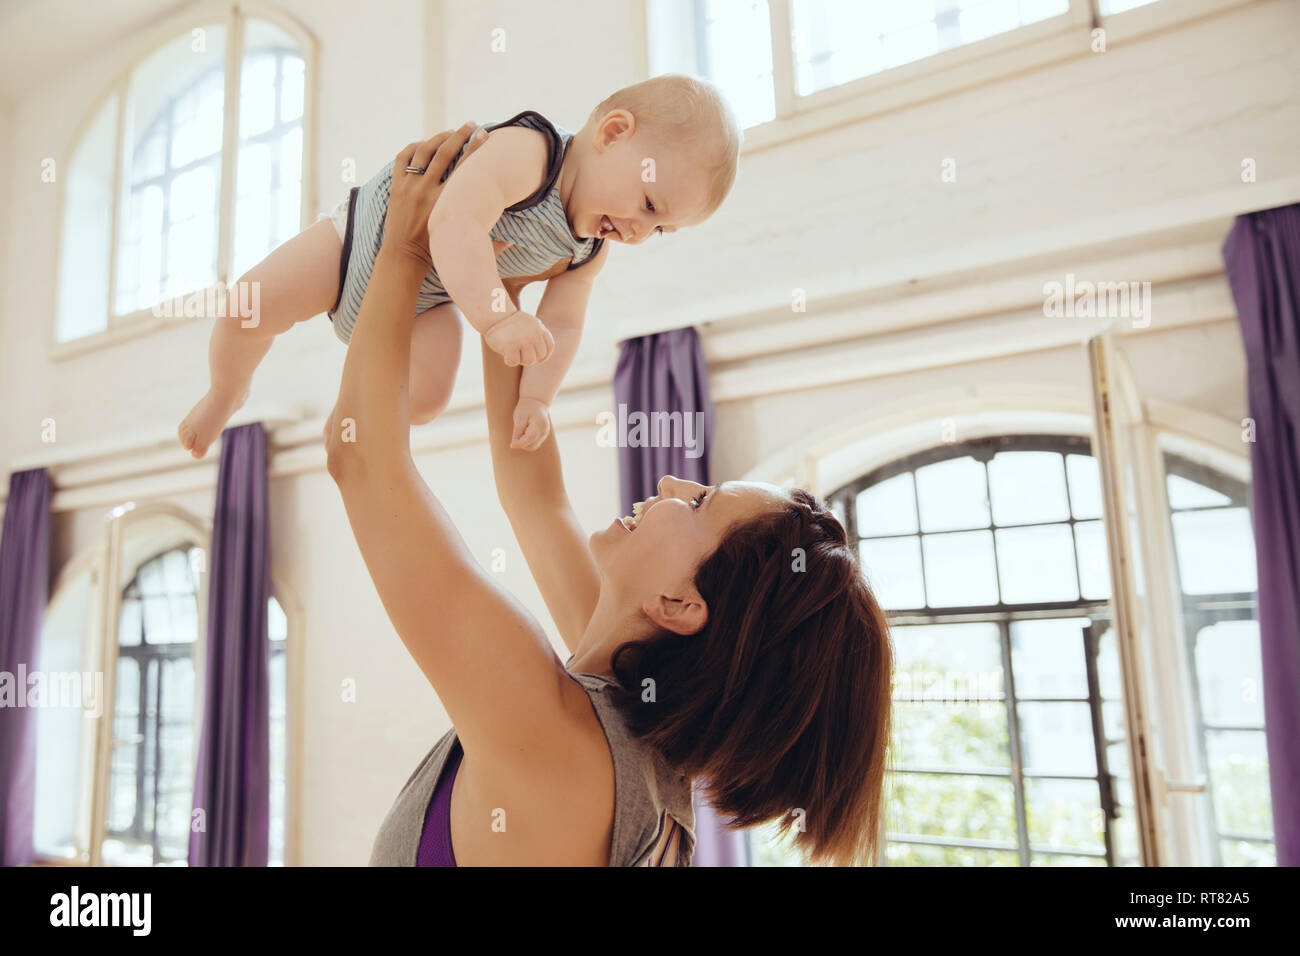 Sporty woman lifting up happy baby dans la salle de formation Banque D'Images